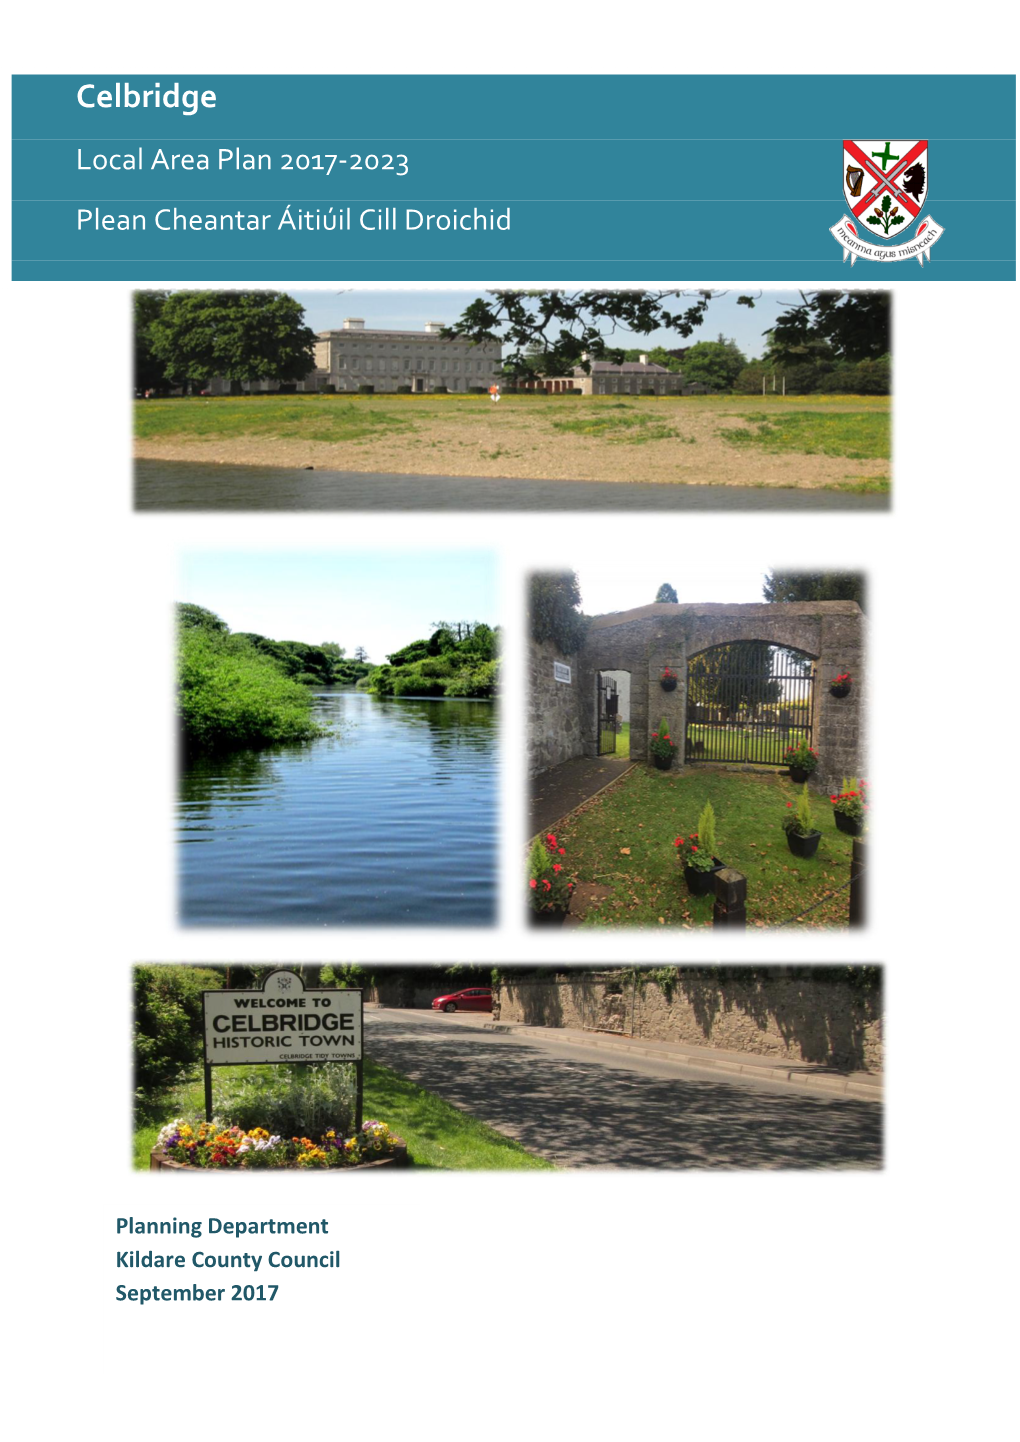 Draft Celbridge Local Area Plan 2017-2023